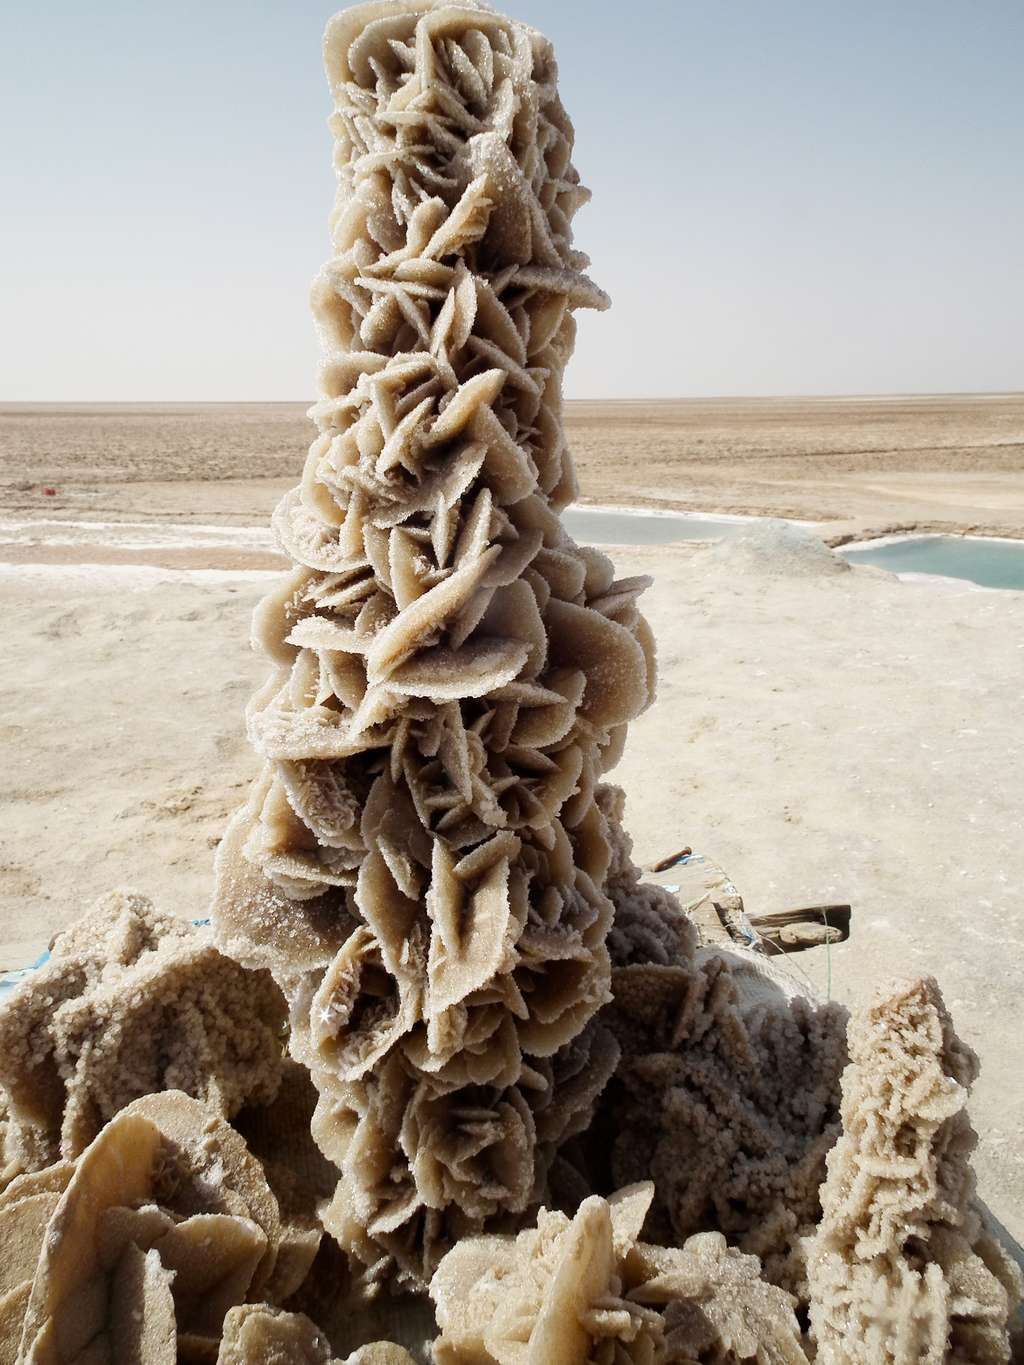 Magnifique rose des sables dans le désert tunisien © Laura Peña, Wikimedia Commons, cc by-sa 3.0